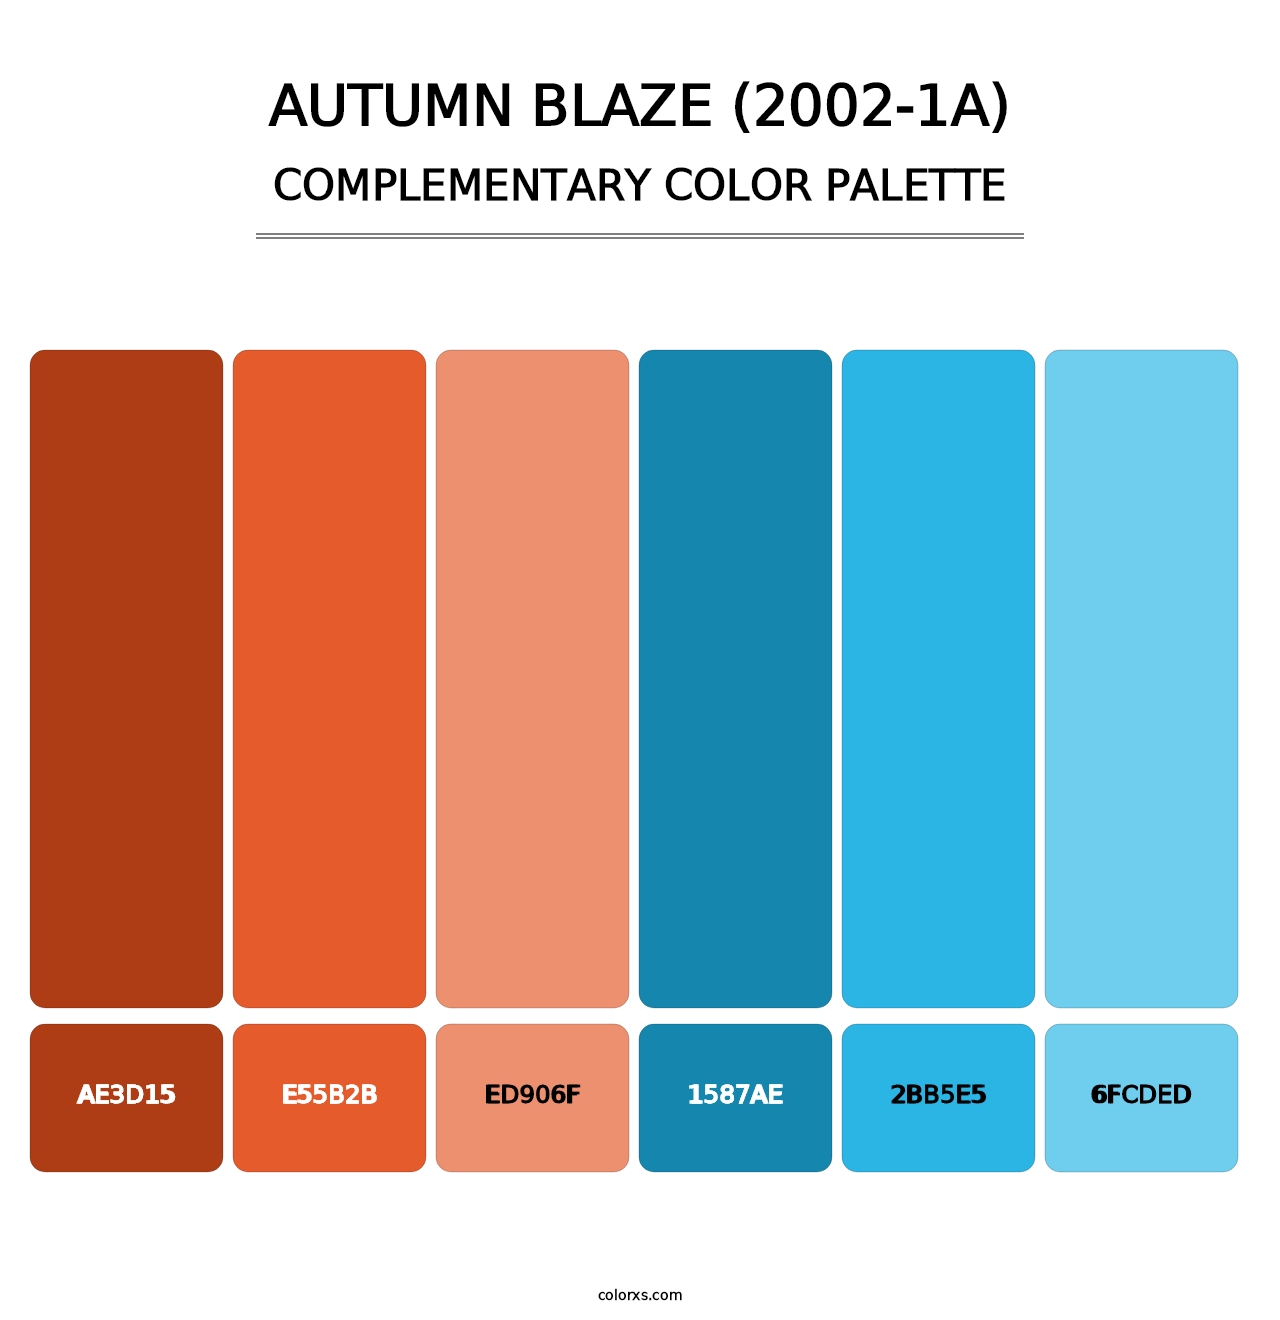 Autumn Blaze (2002-1A) - Complementary Color Palette